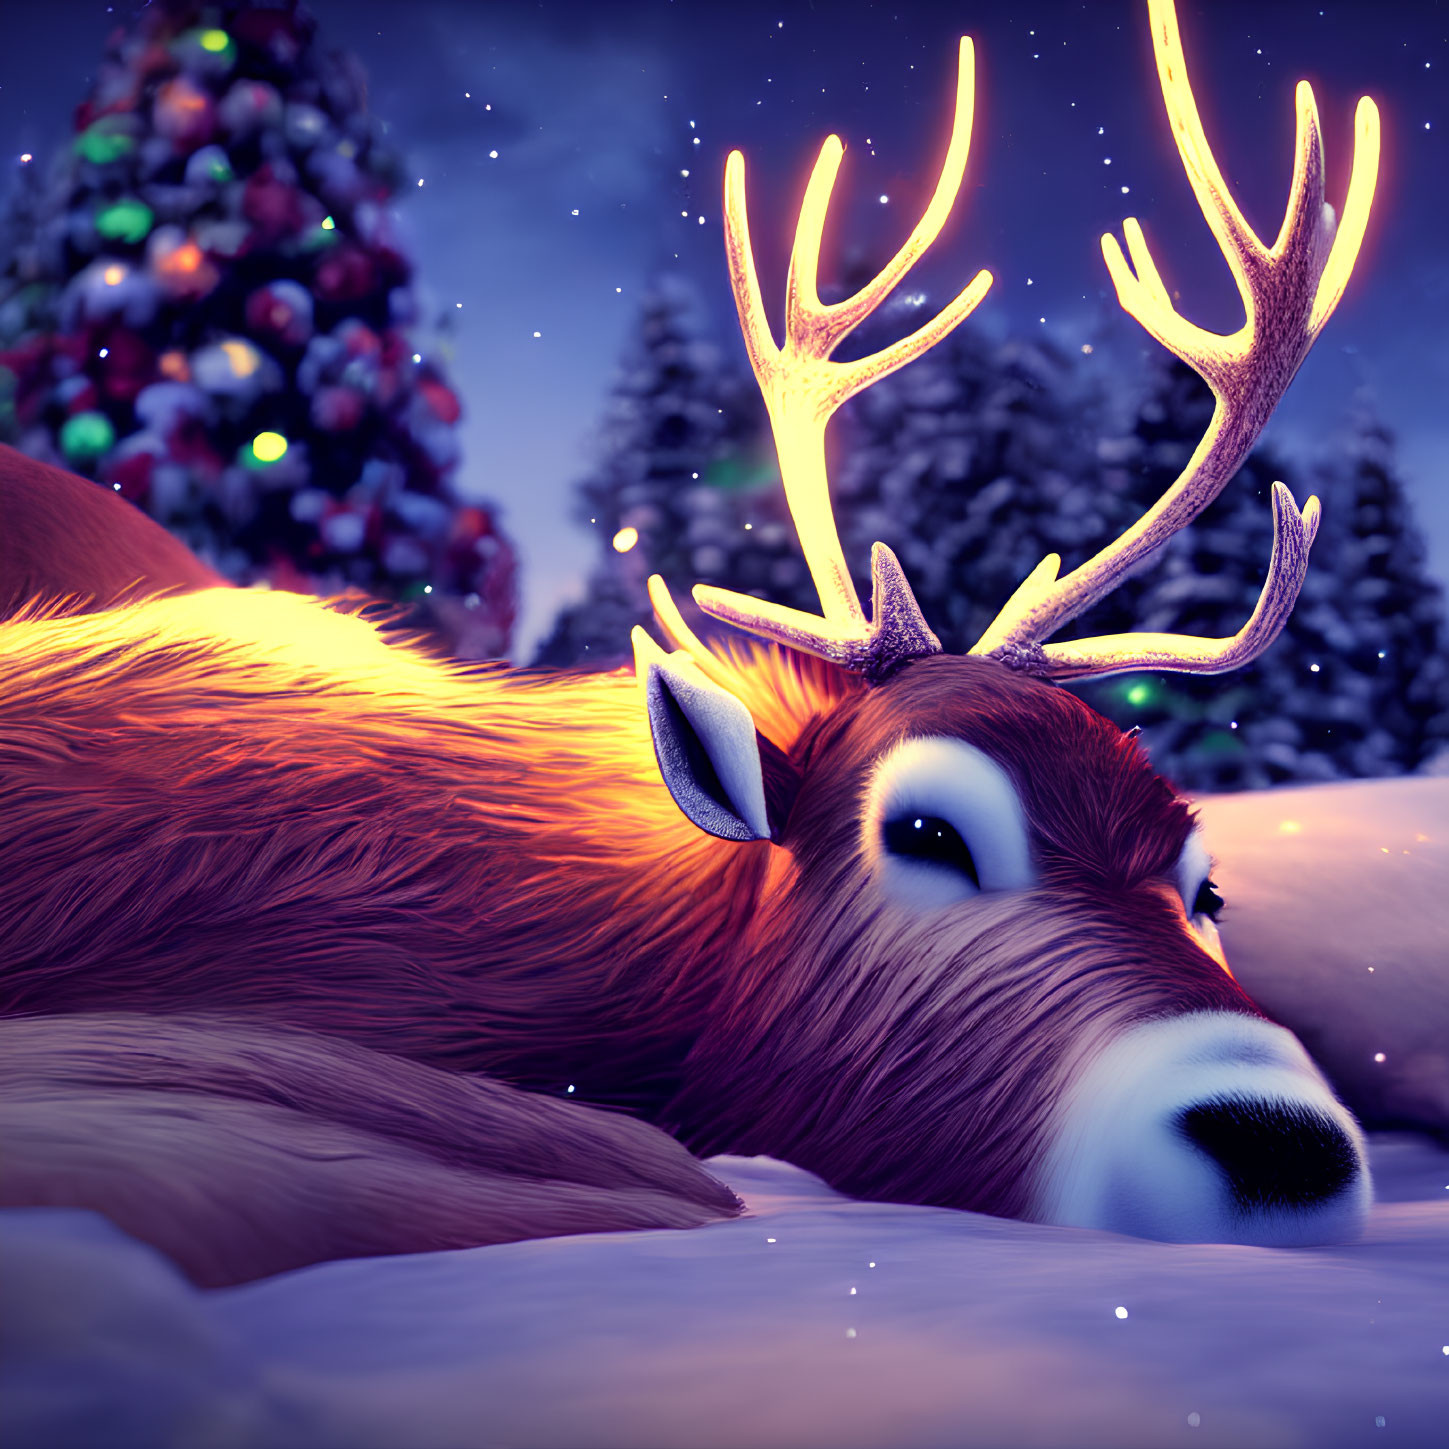 Digital illustration: Reindeer with glowing antlers in snowy Christmas scene